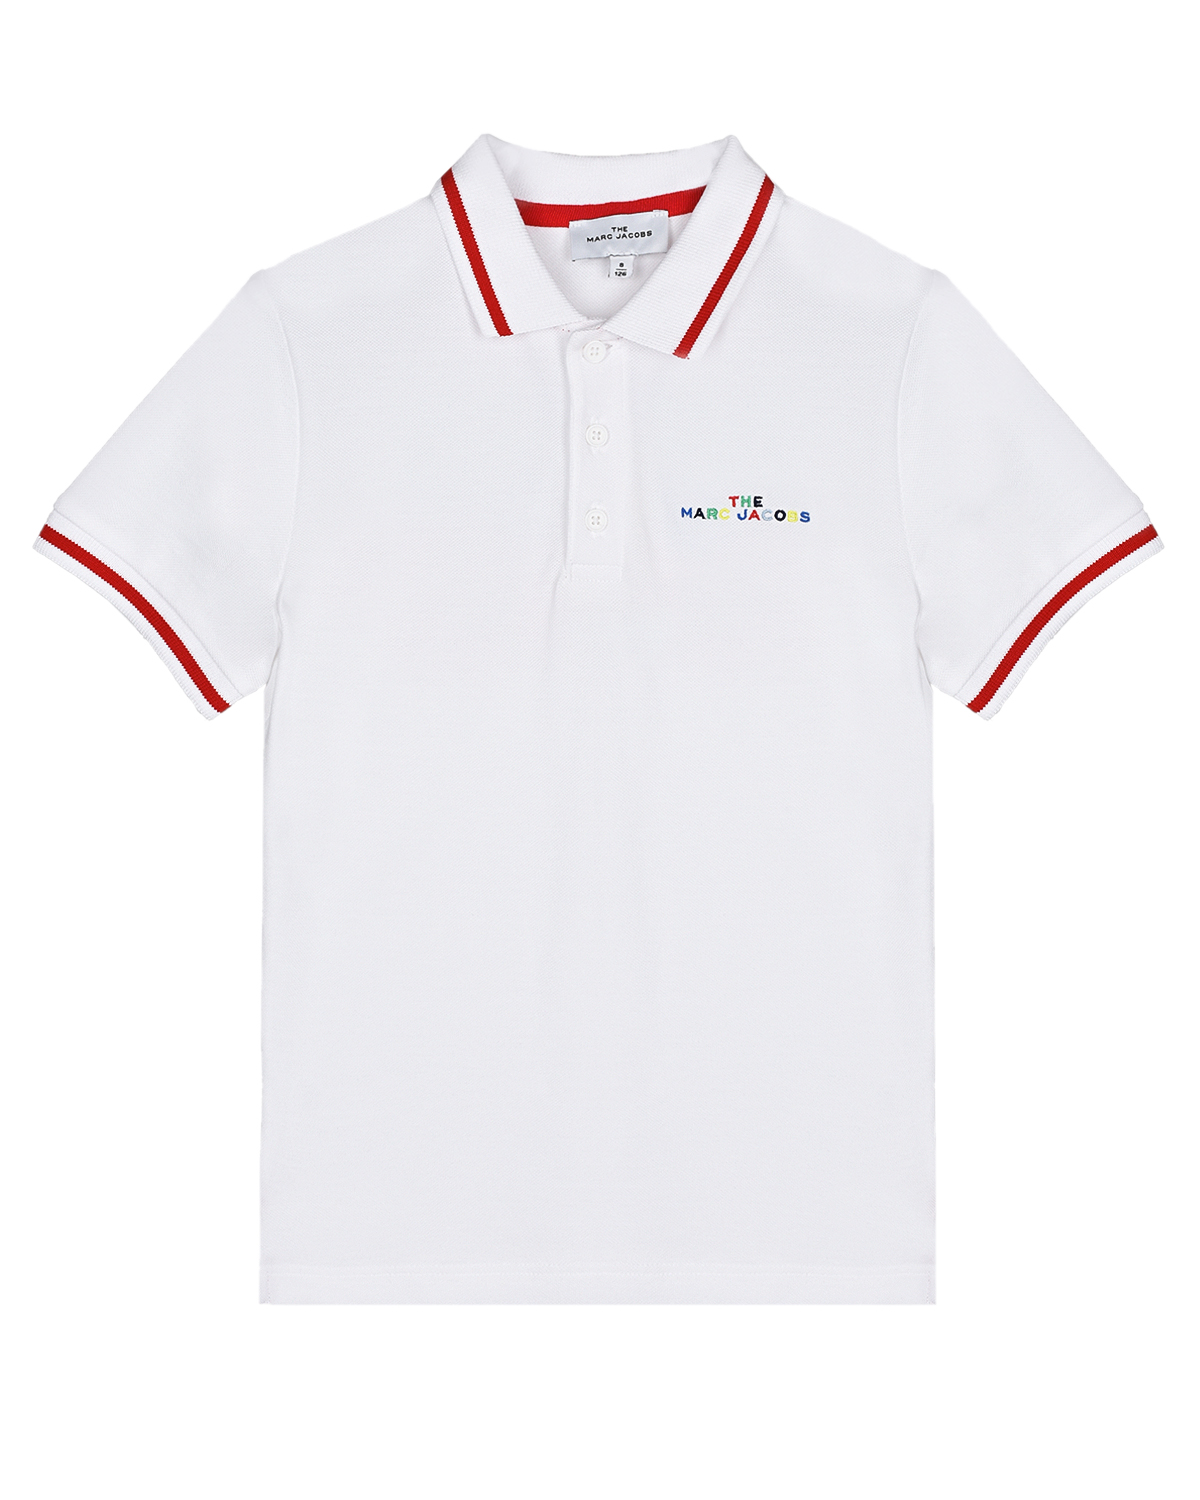 Купить Белая футболка-поло с красной окантовкой Marc Jacobs (The), Белый, 100%хлопок